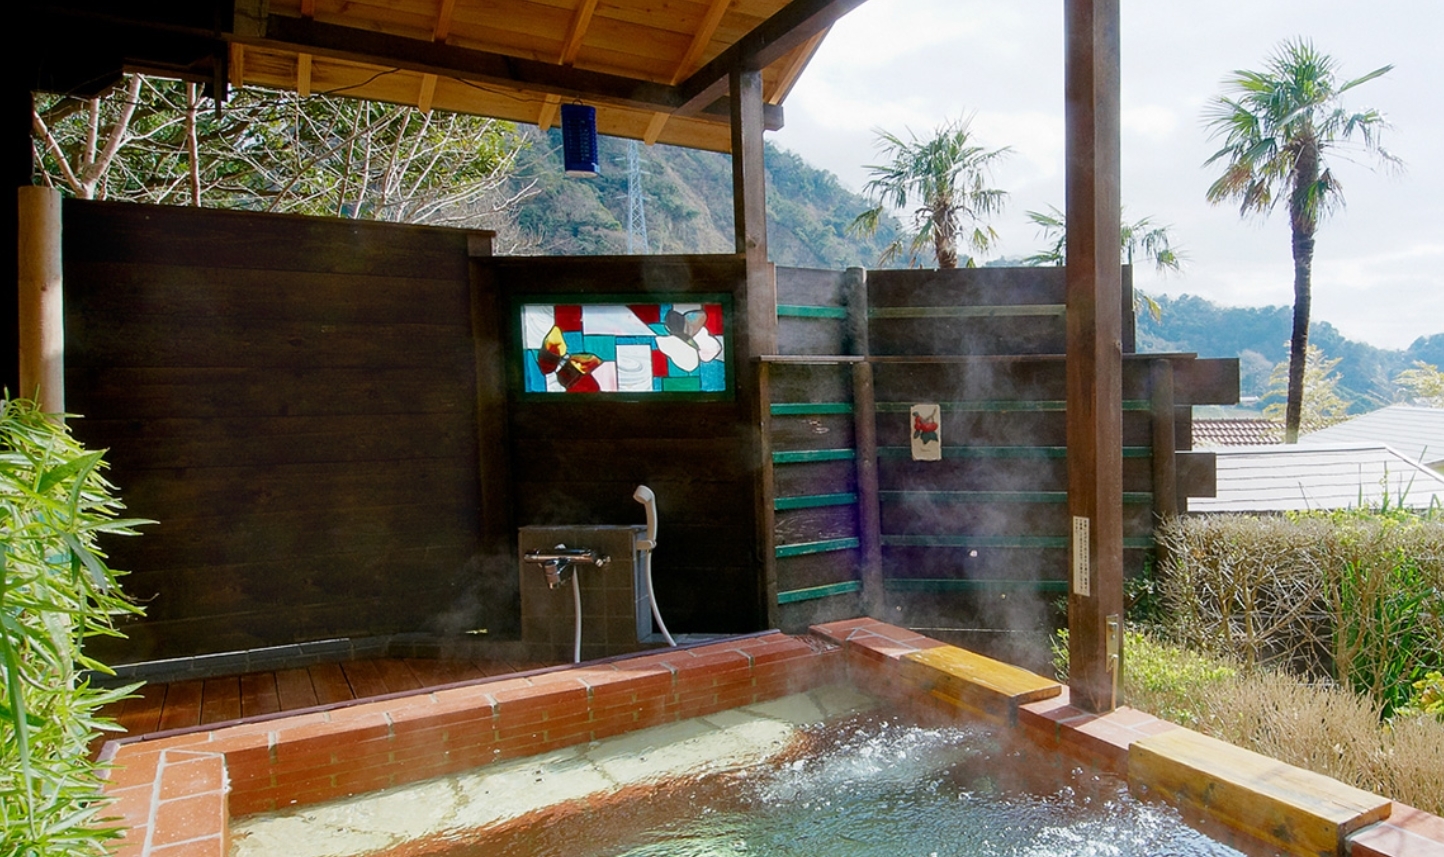 ヴィラ勝山アヴェールの露天風呂のお風呂の様子の画像